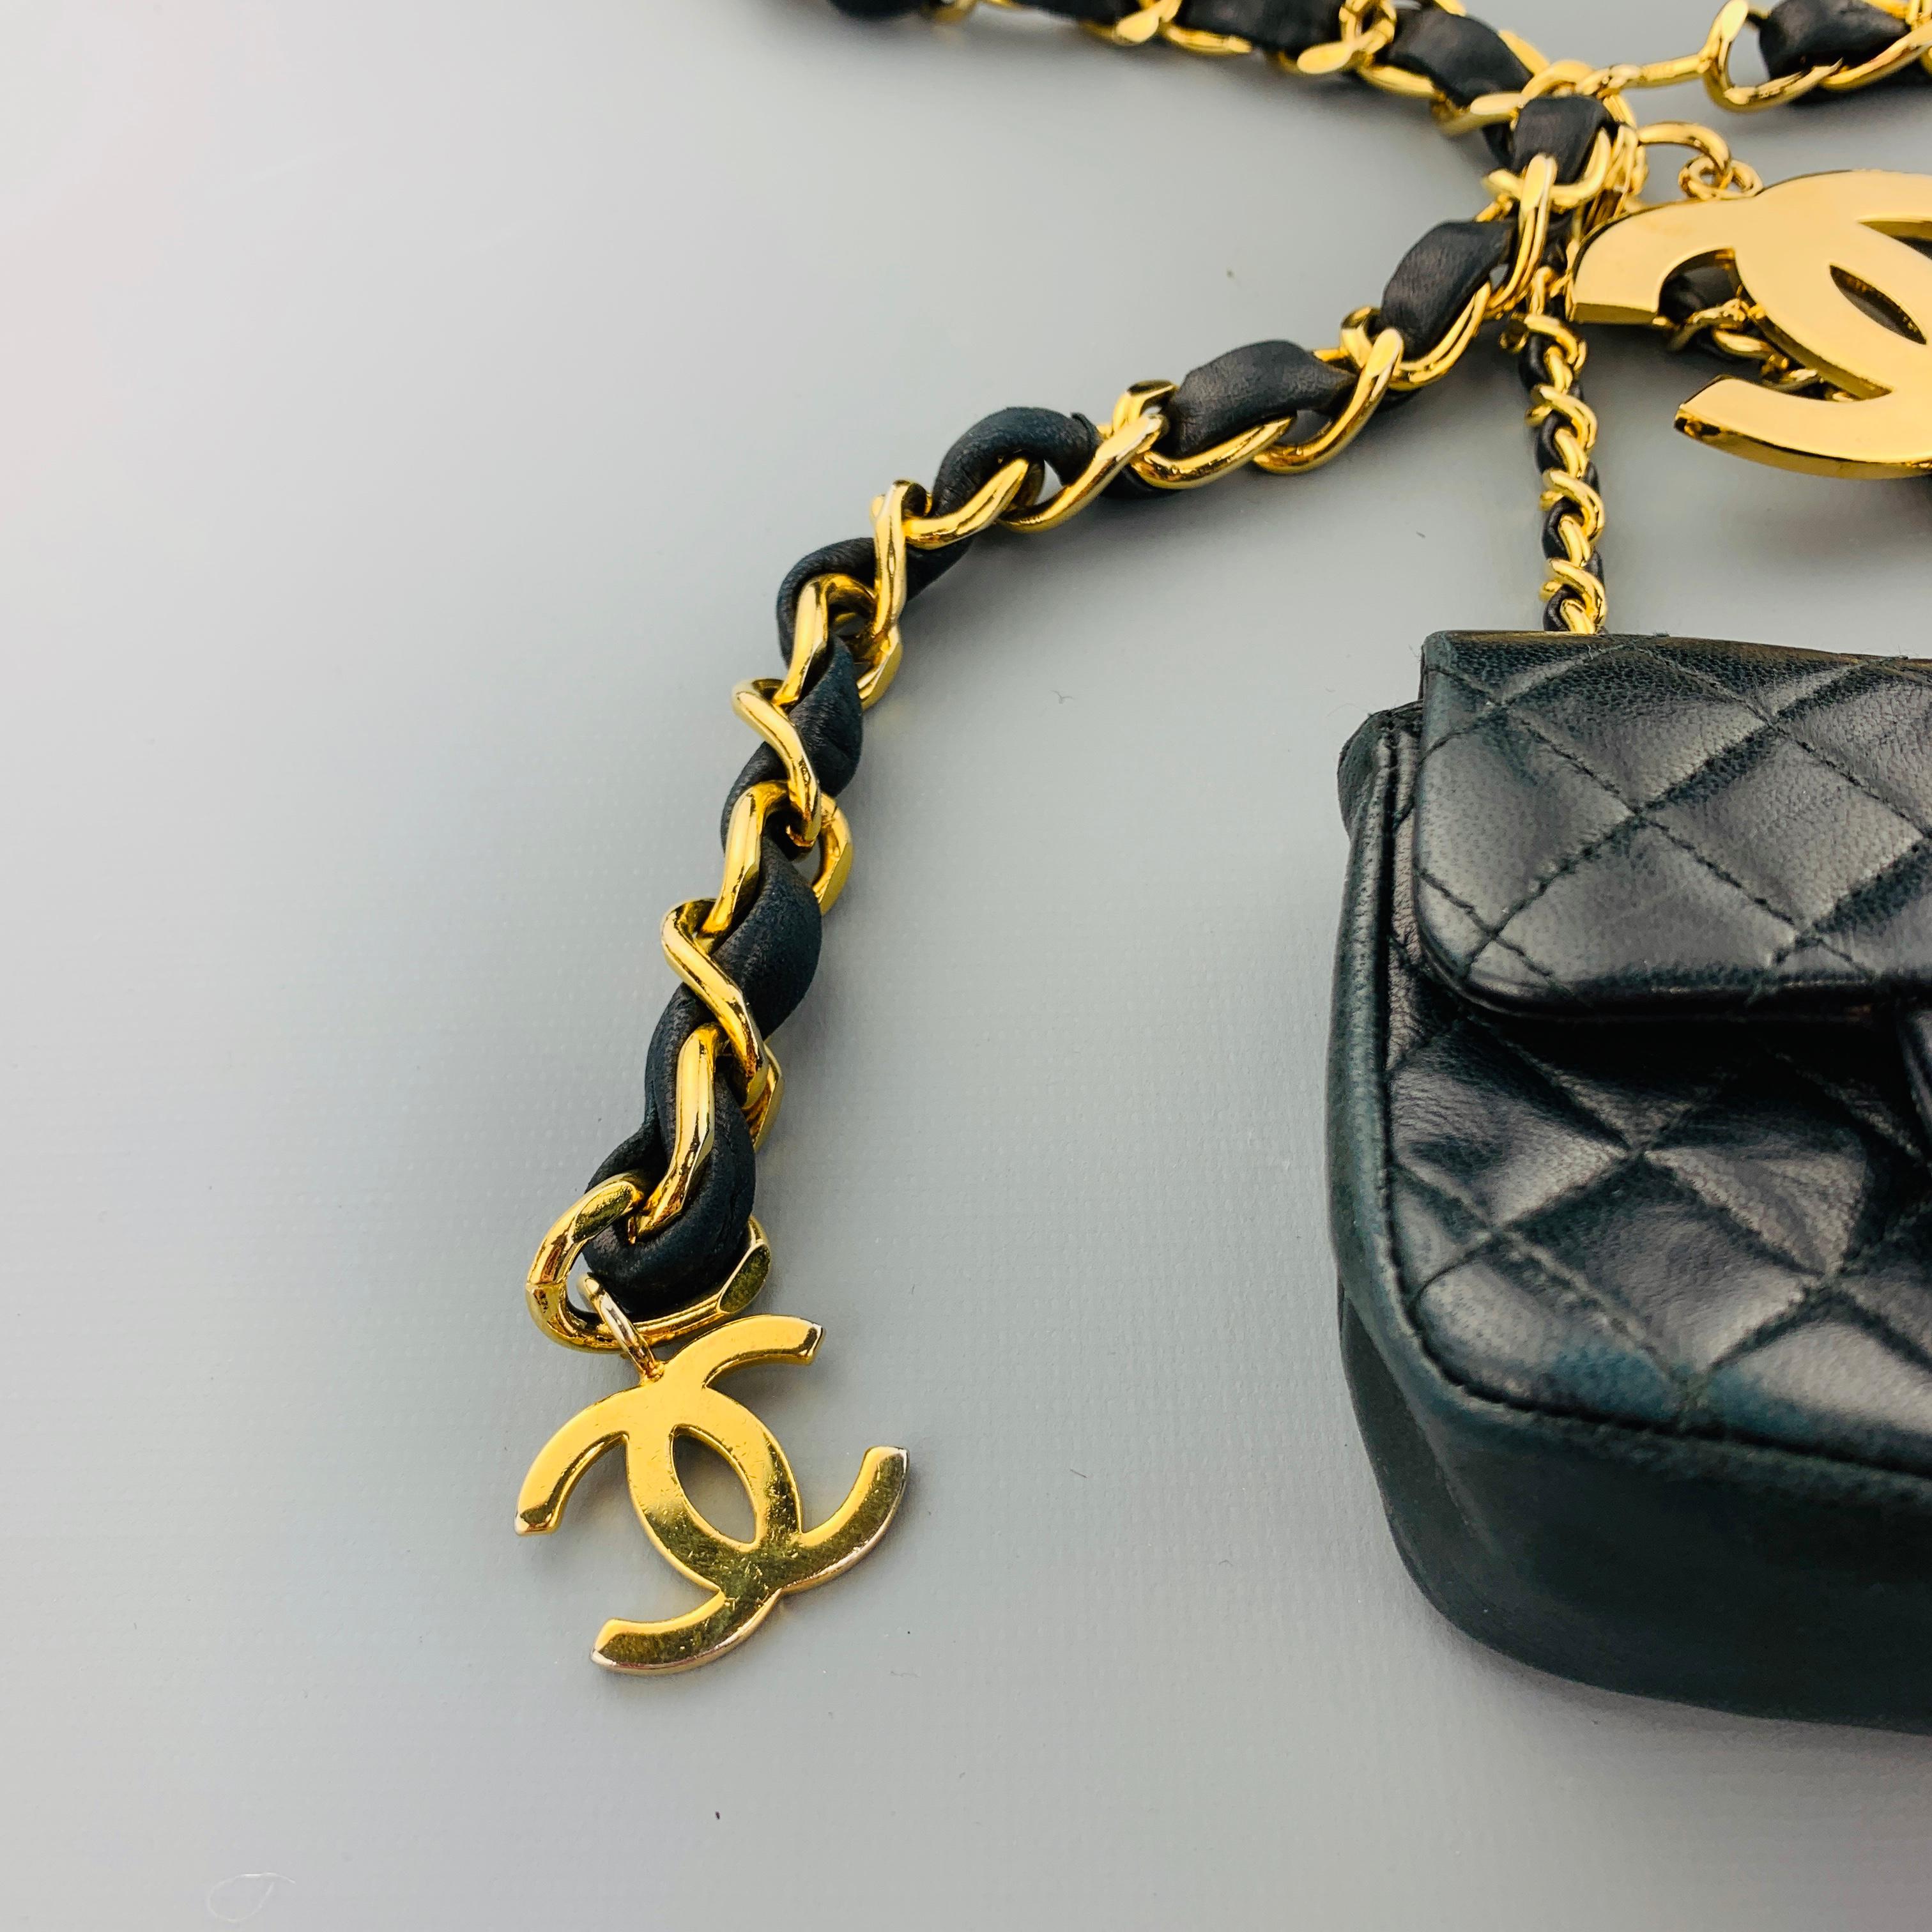 mini purse with chain